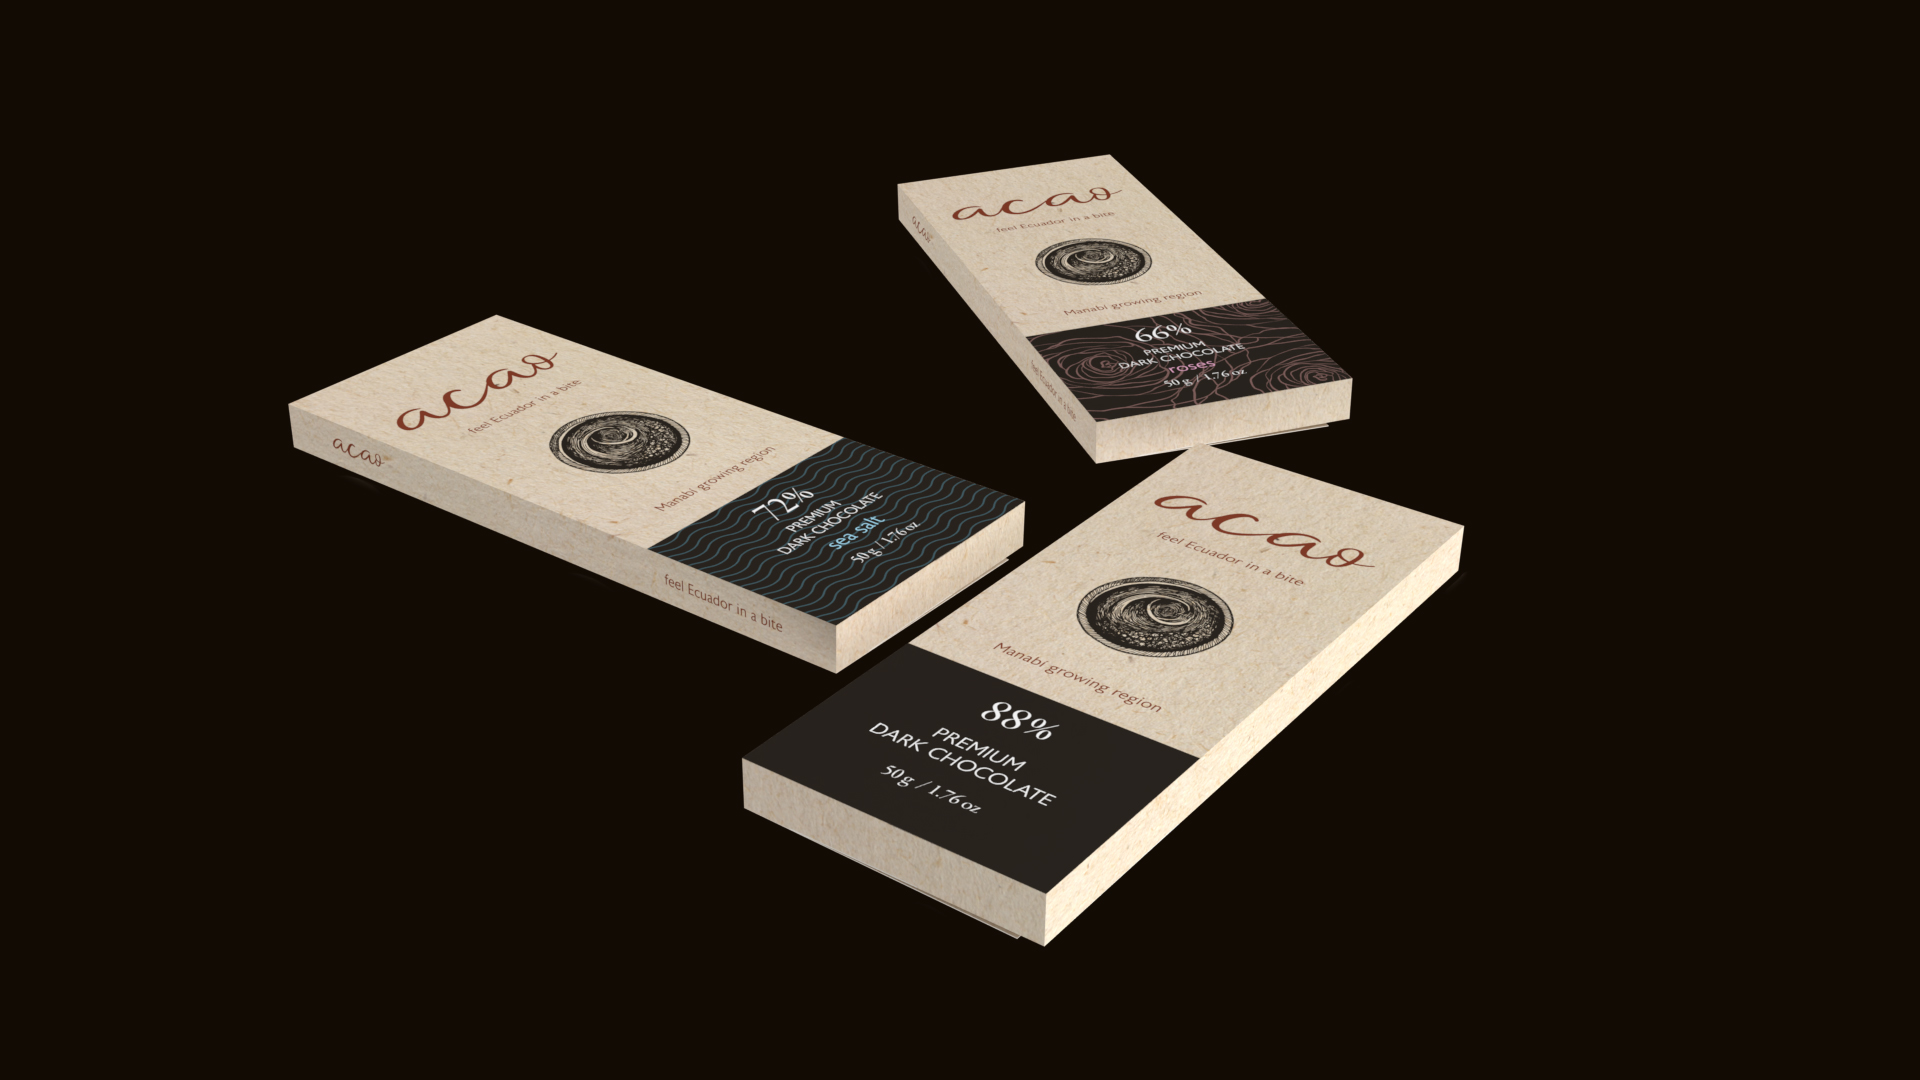 Label design - Acao